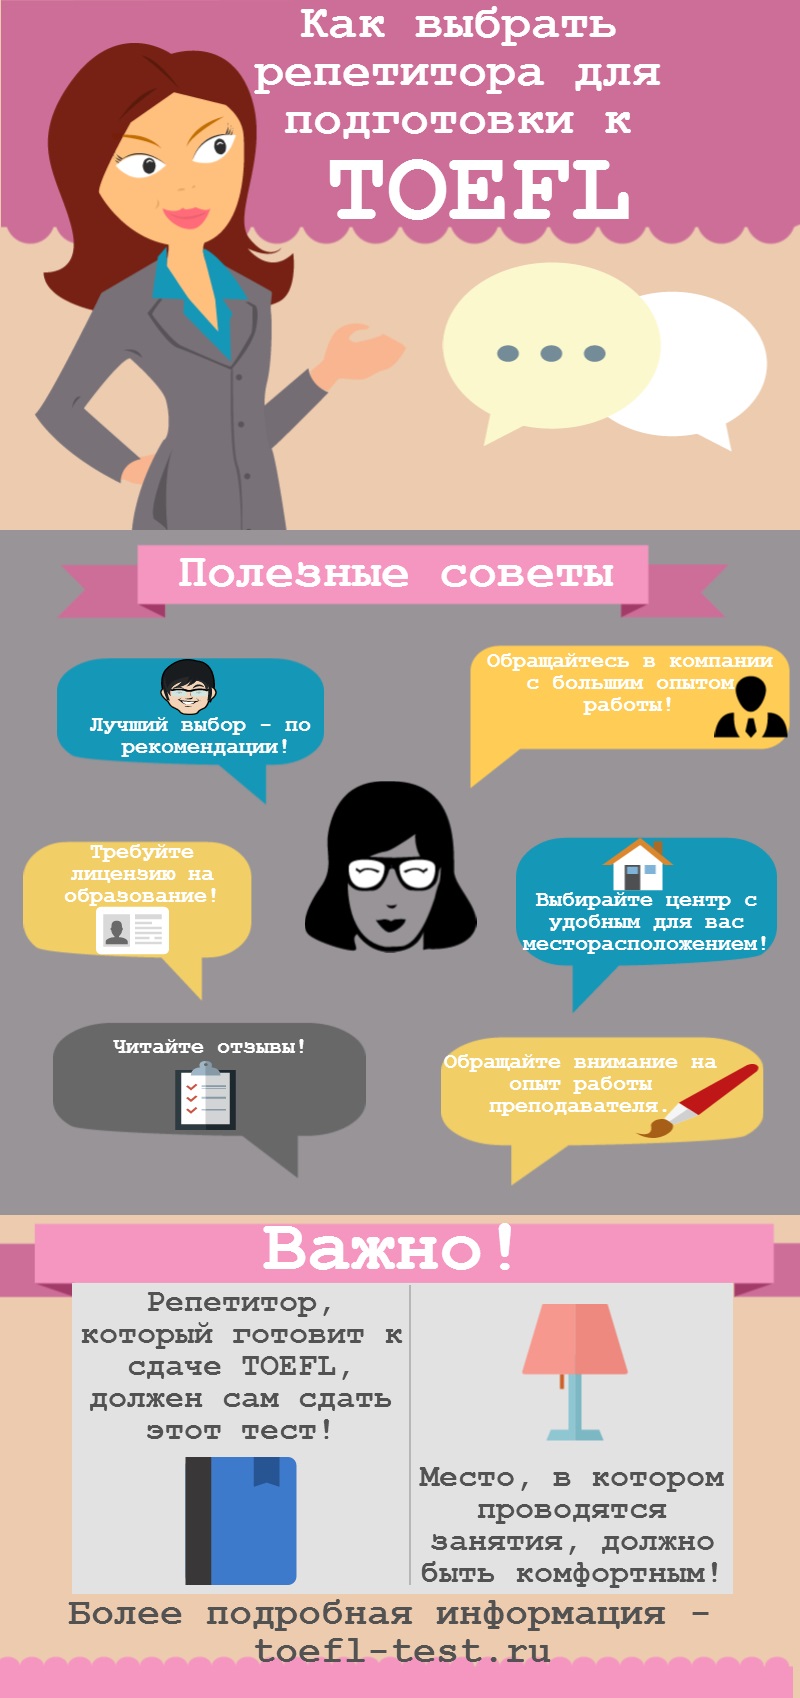 О том как выбрать репетитора для TOEFL в инфографике на toefl-test.ru